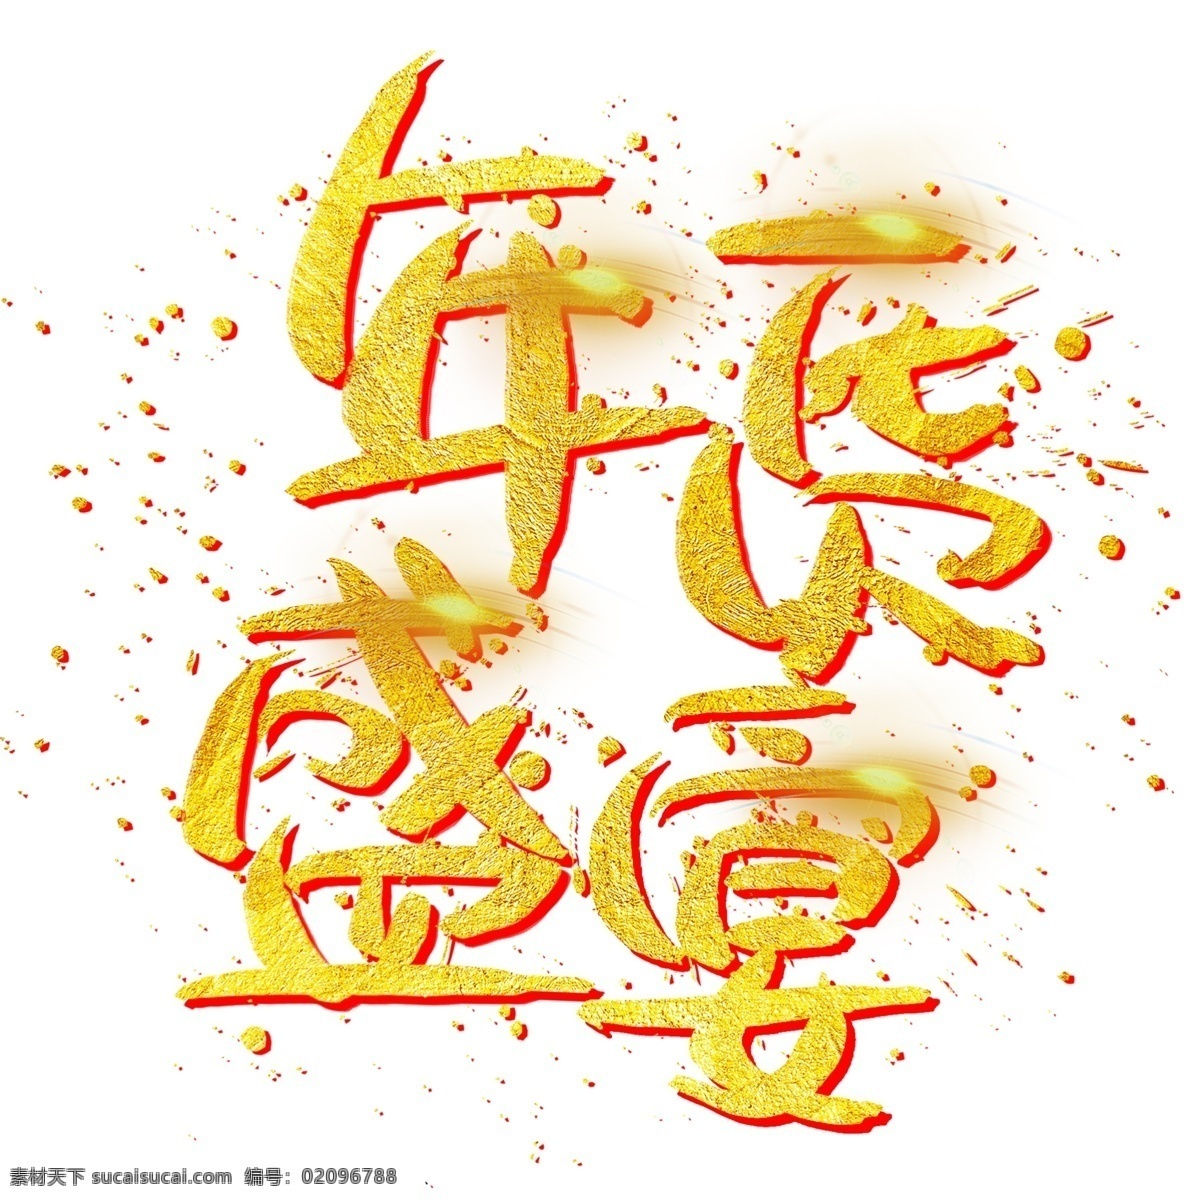 年货 盛宴 手写 手绘 金色 金沙 书法艺术 字 年味 办年货 过大年 吉祥 祥云 年货盛宴 猪年 chinese